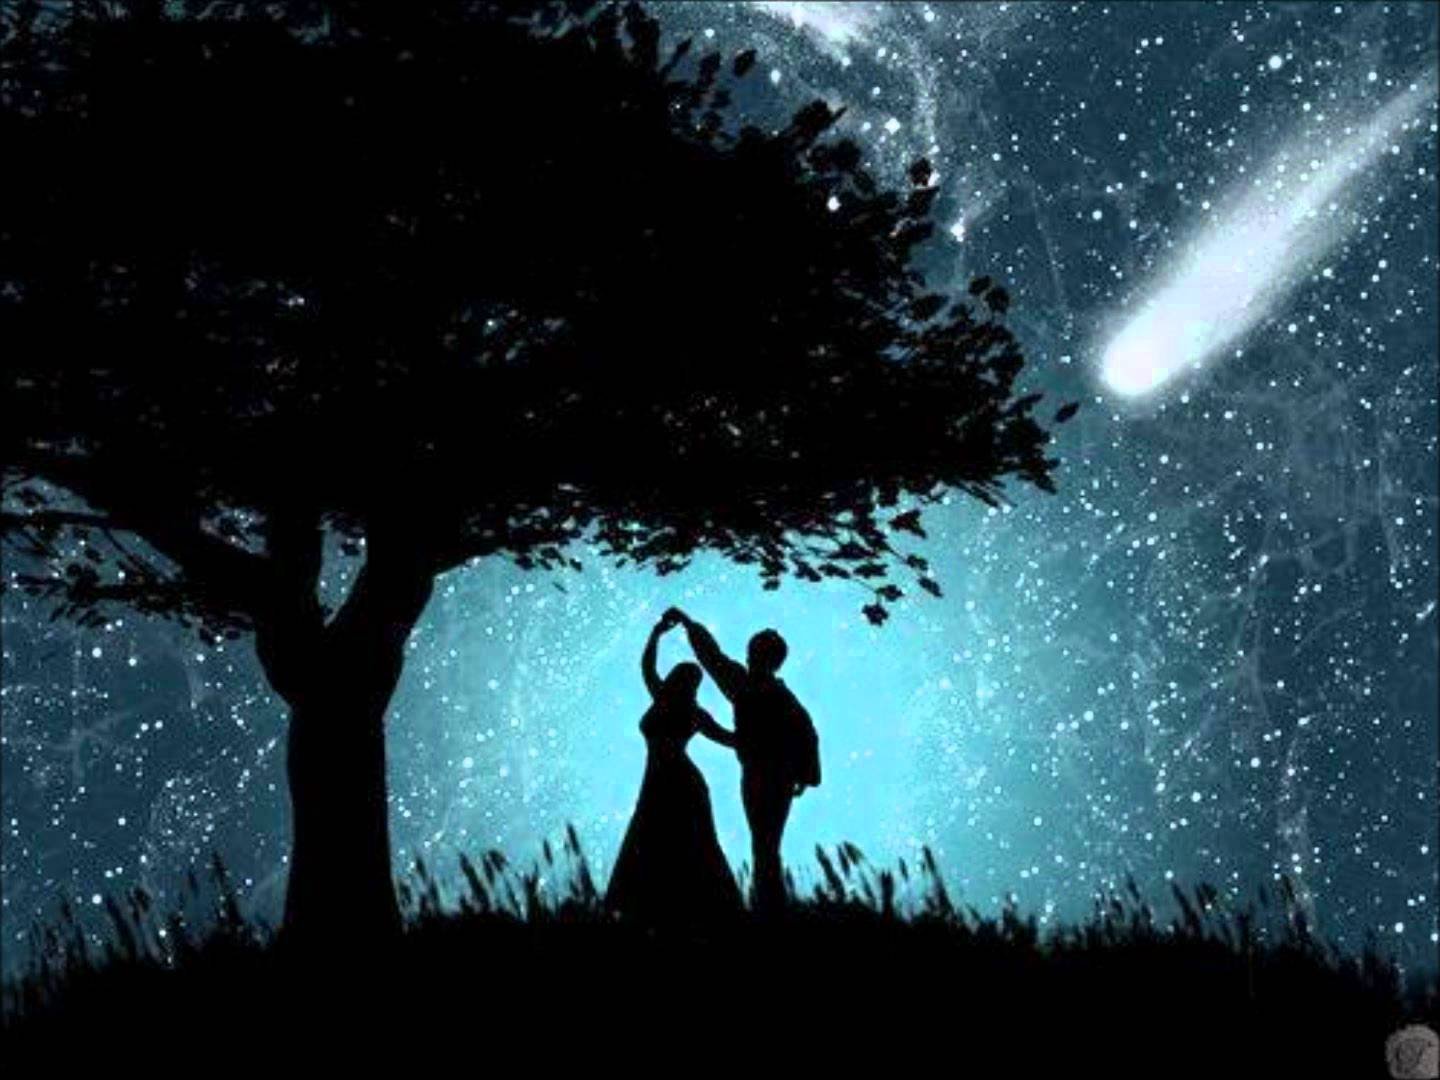 Love s dream. Влюбленные ночью. Под звездным небом. Поцелуй под звездным небом. Силуэты на фоне звездного неба.